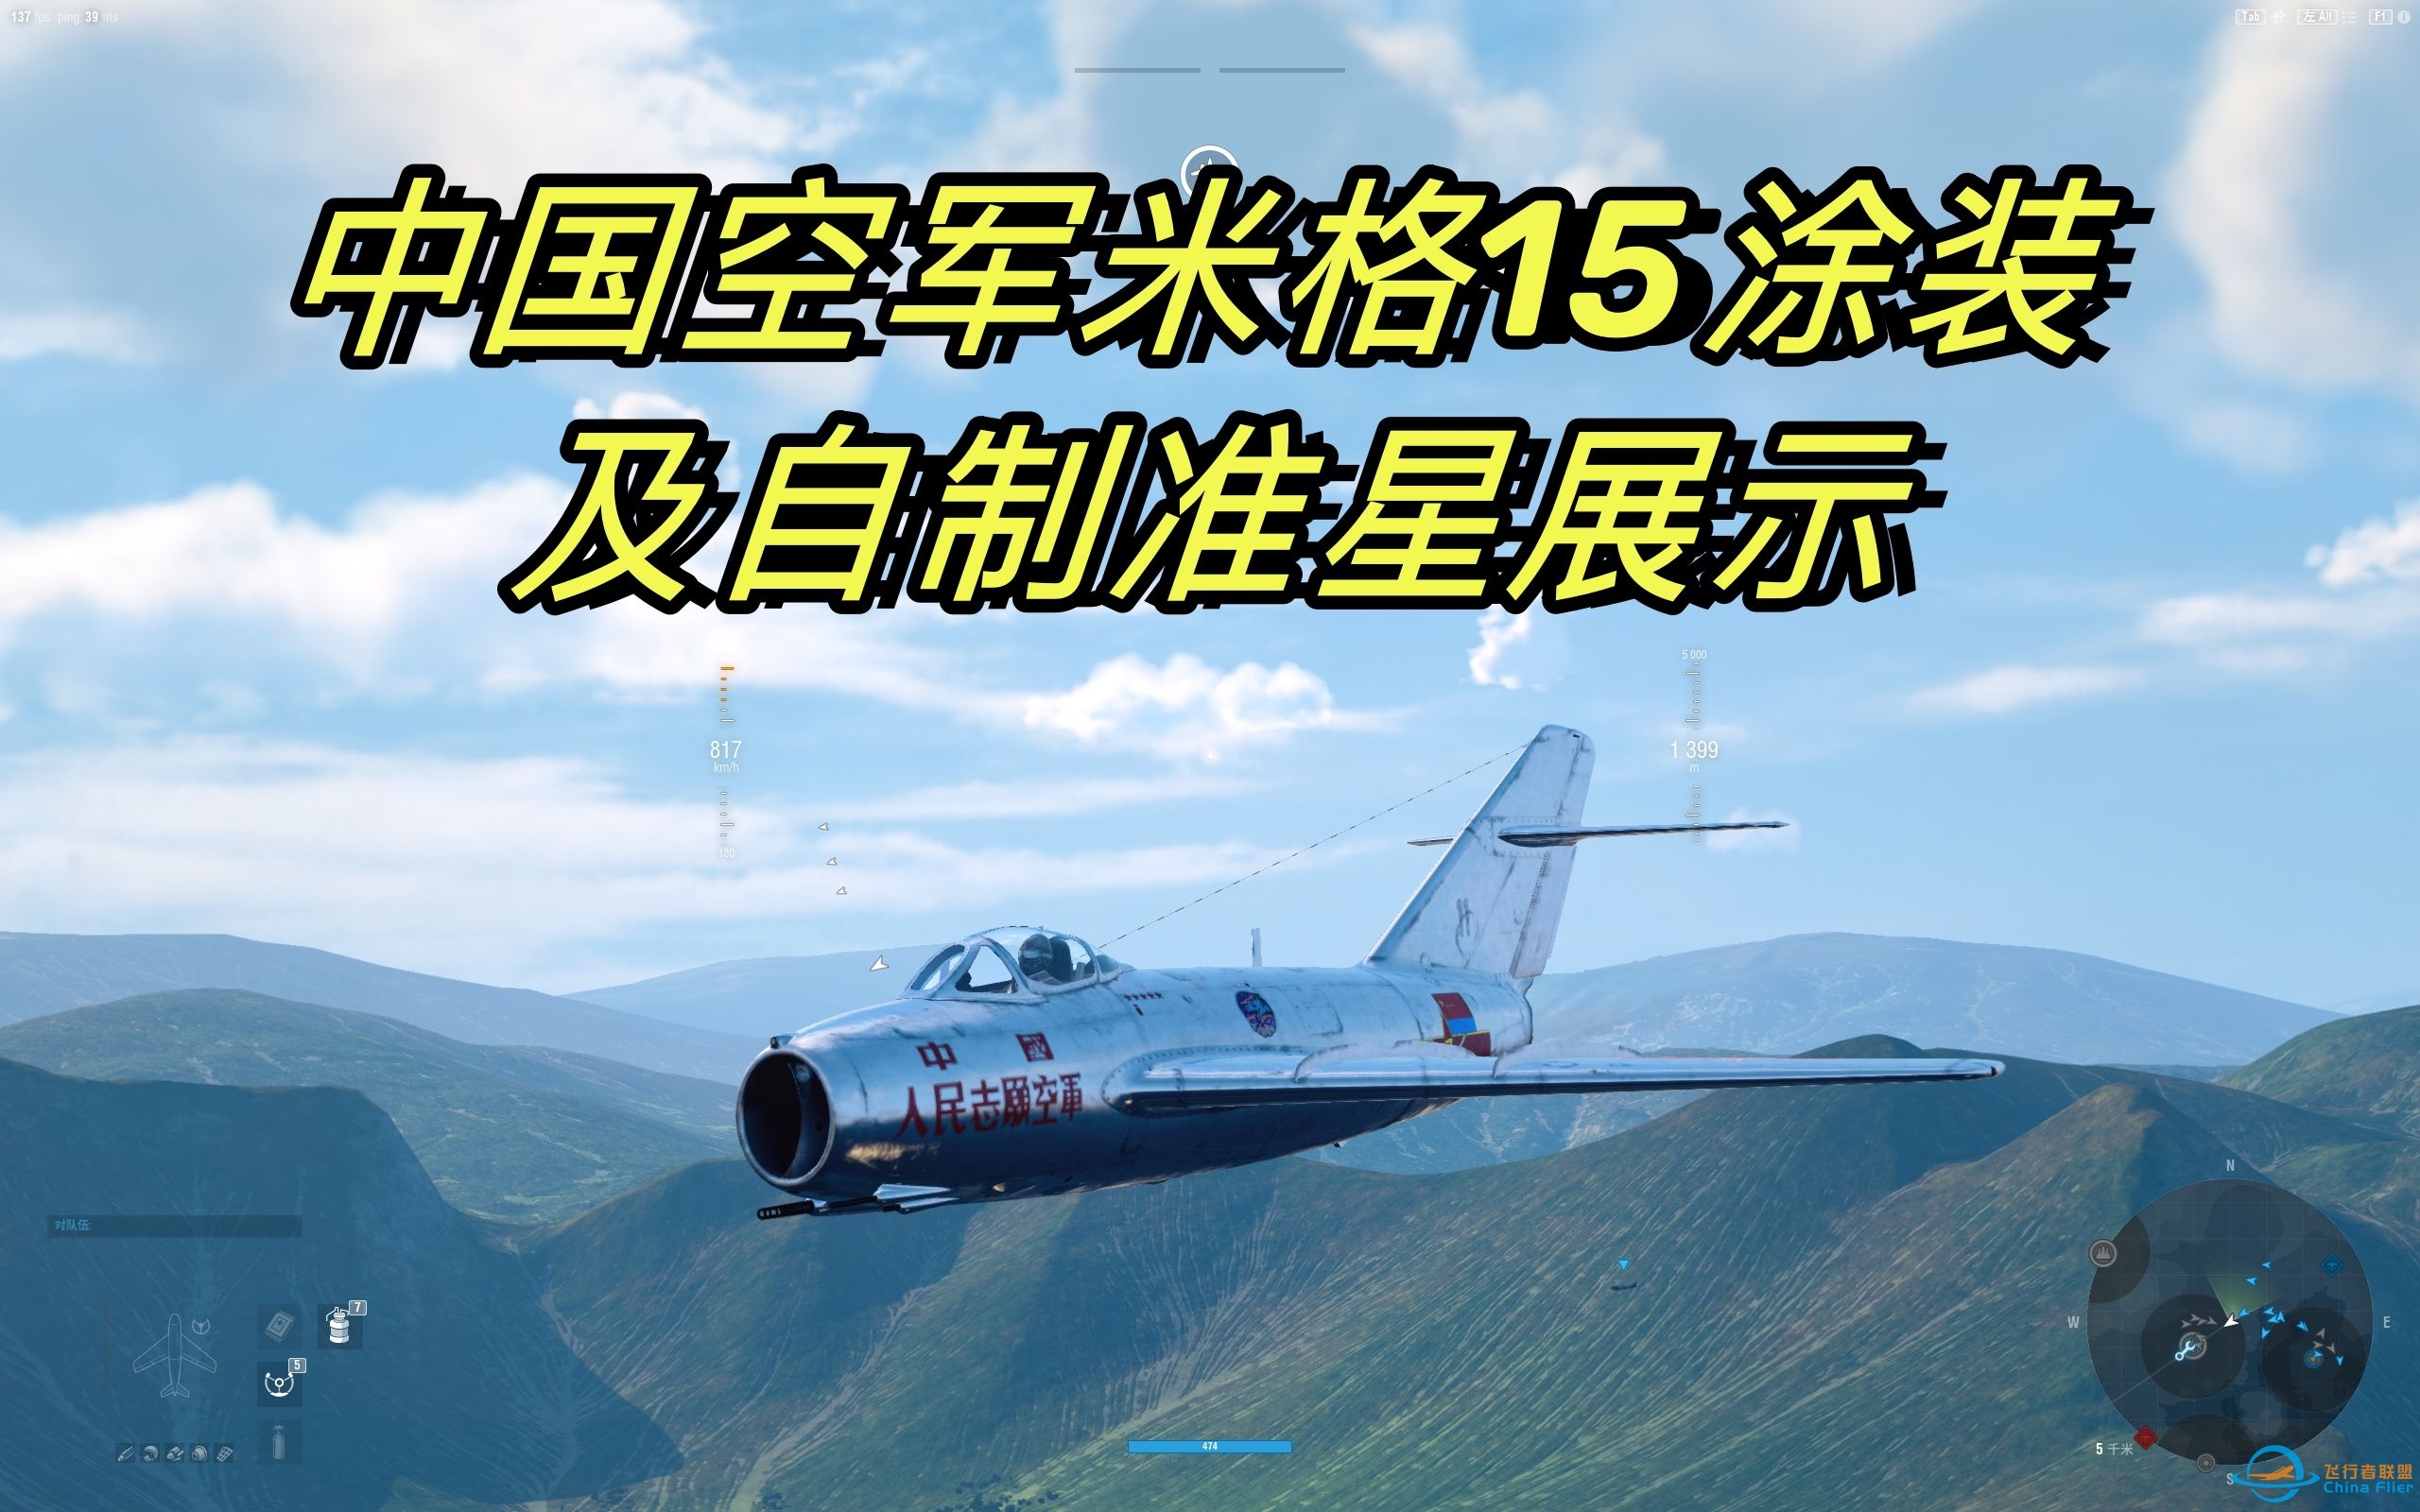 [战机世界]中国空军米格15涂装及自制仿喷火战斗机准星展示-5089 